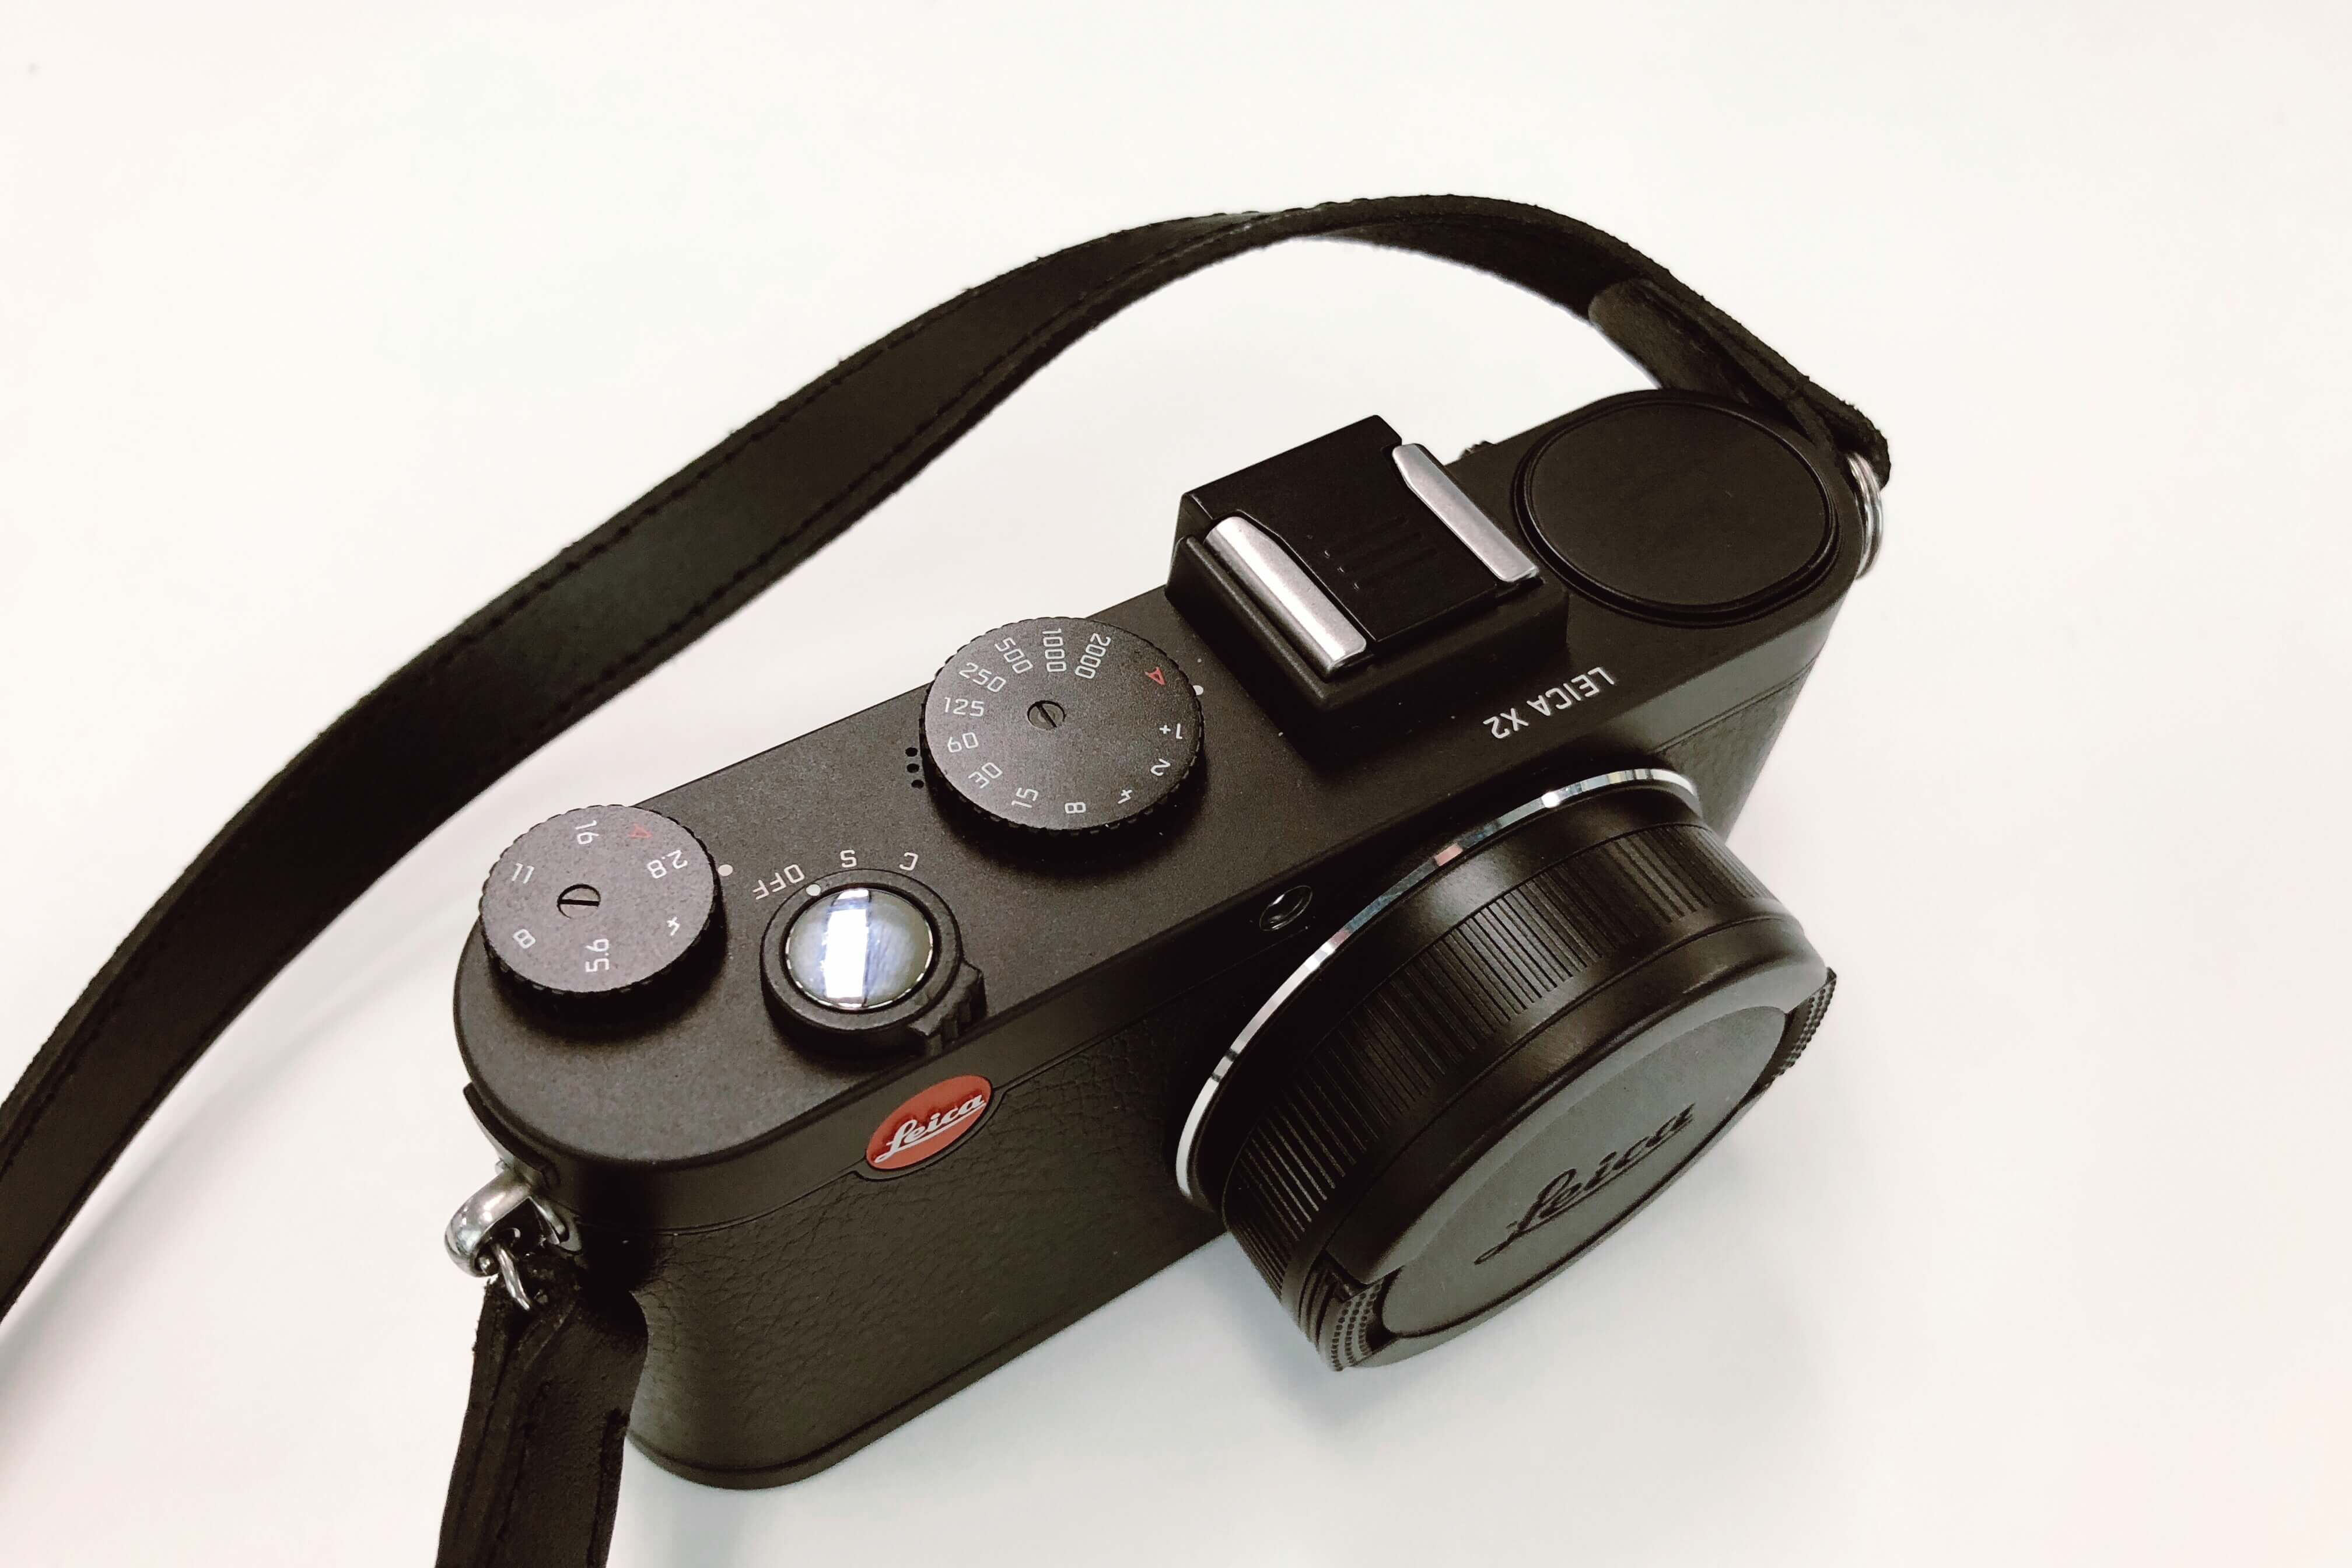 このヒラヒラと飛ぶ感覚はまさにバルナック。小粋なコンデジ Leica X2 